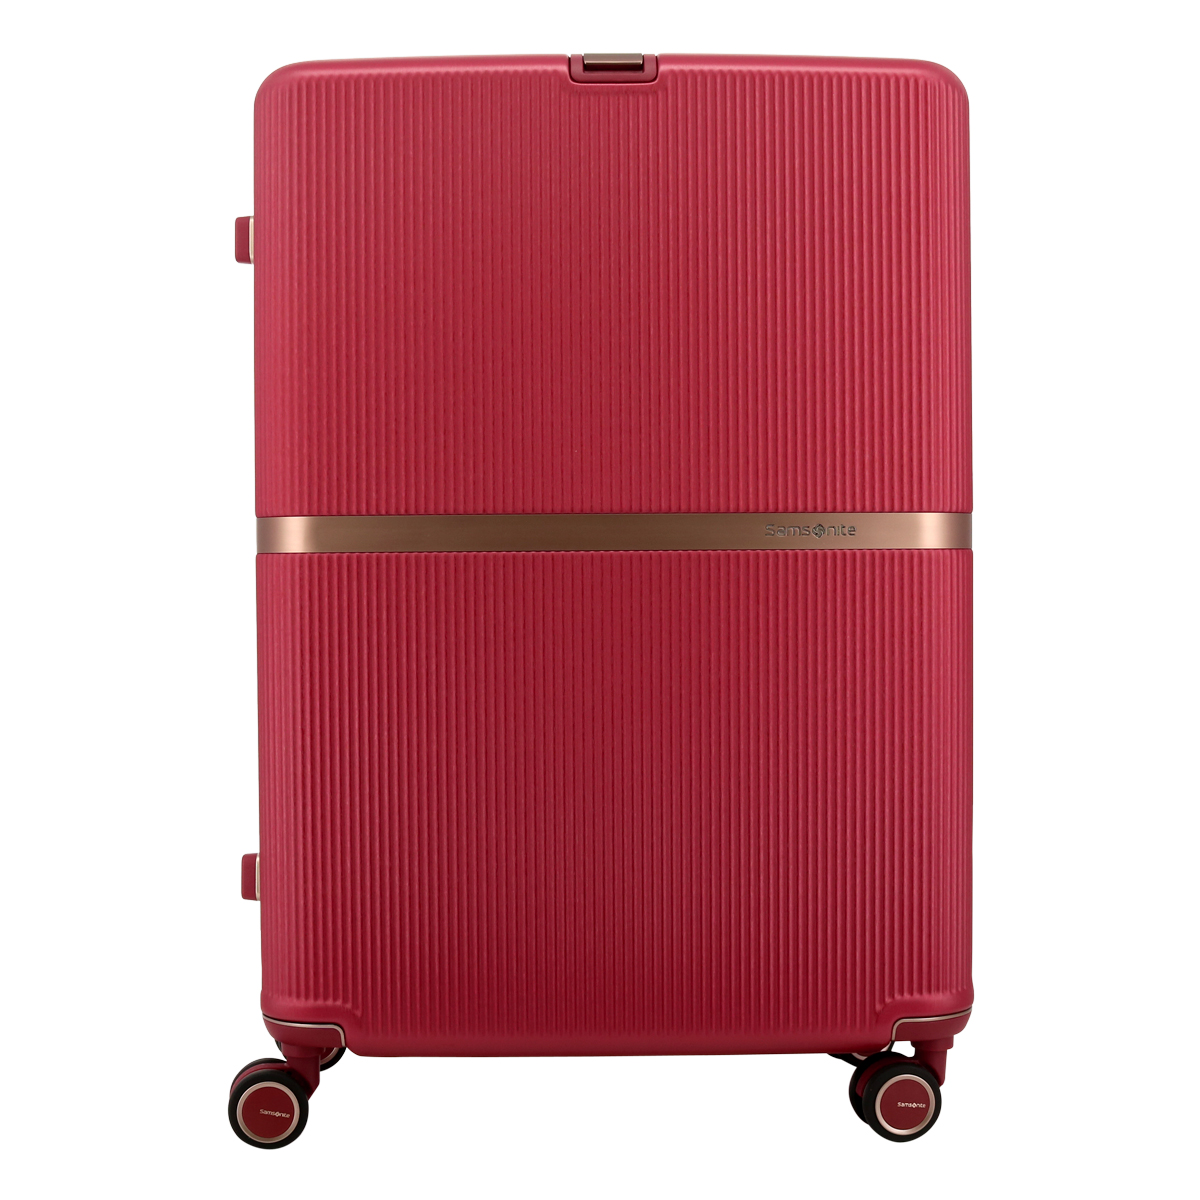 サムソナイト スーツケース 118L 75cm 5.4kg ミンター スピナー75 Samsonite│ TSAロック ハード エキスパンダブル  大容量 海外旅行